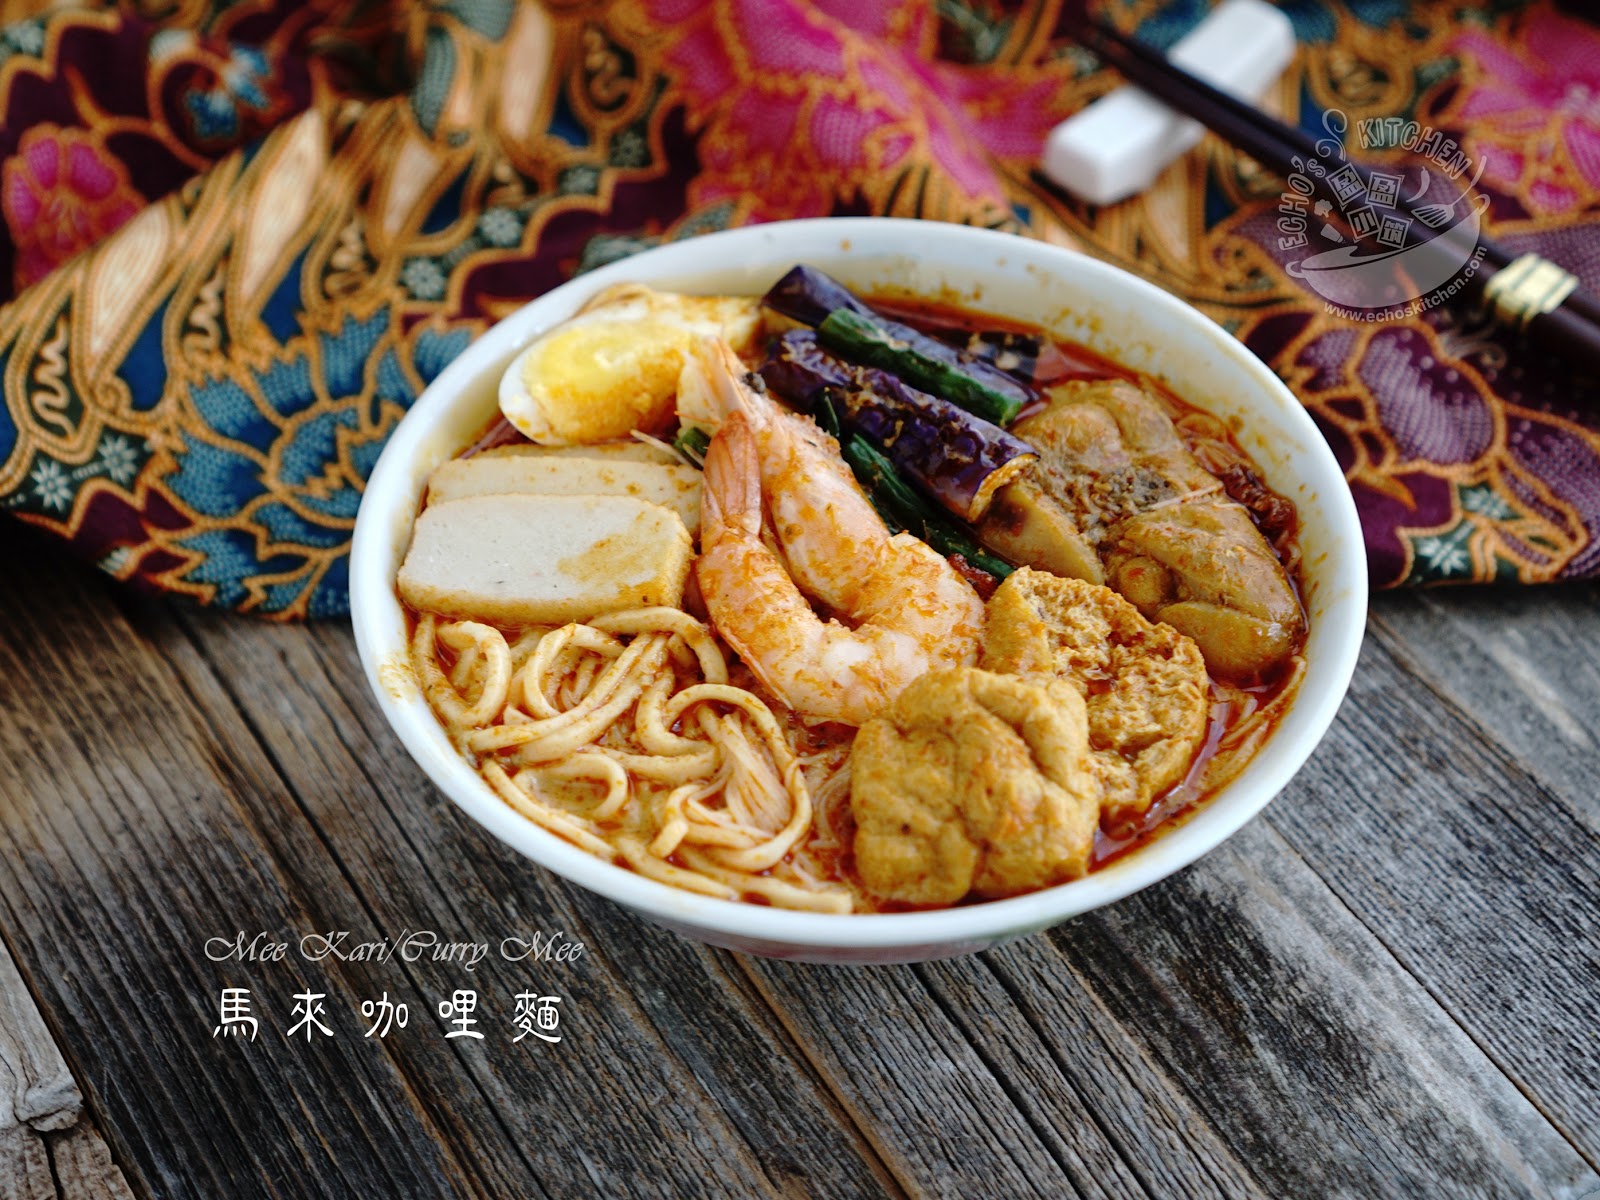 A taste of memories -- Echo's Kitchen: Mee Kari/Curry Mee 【马来咖喱面】